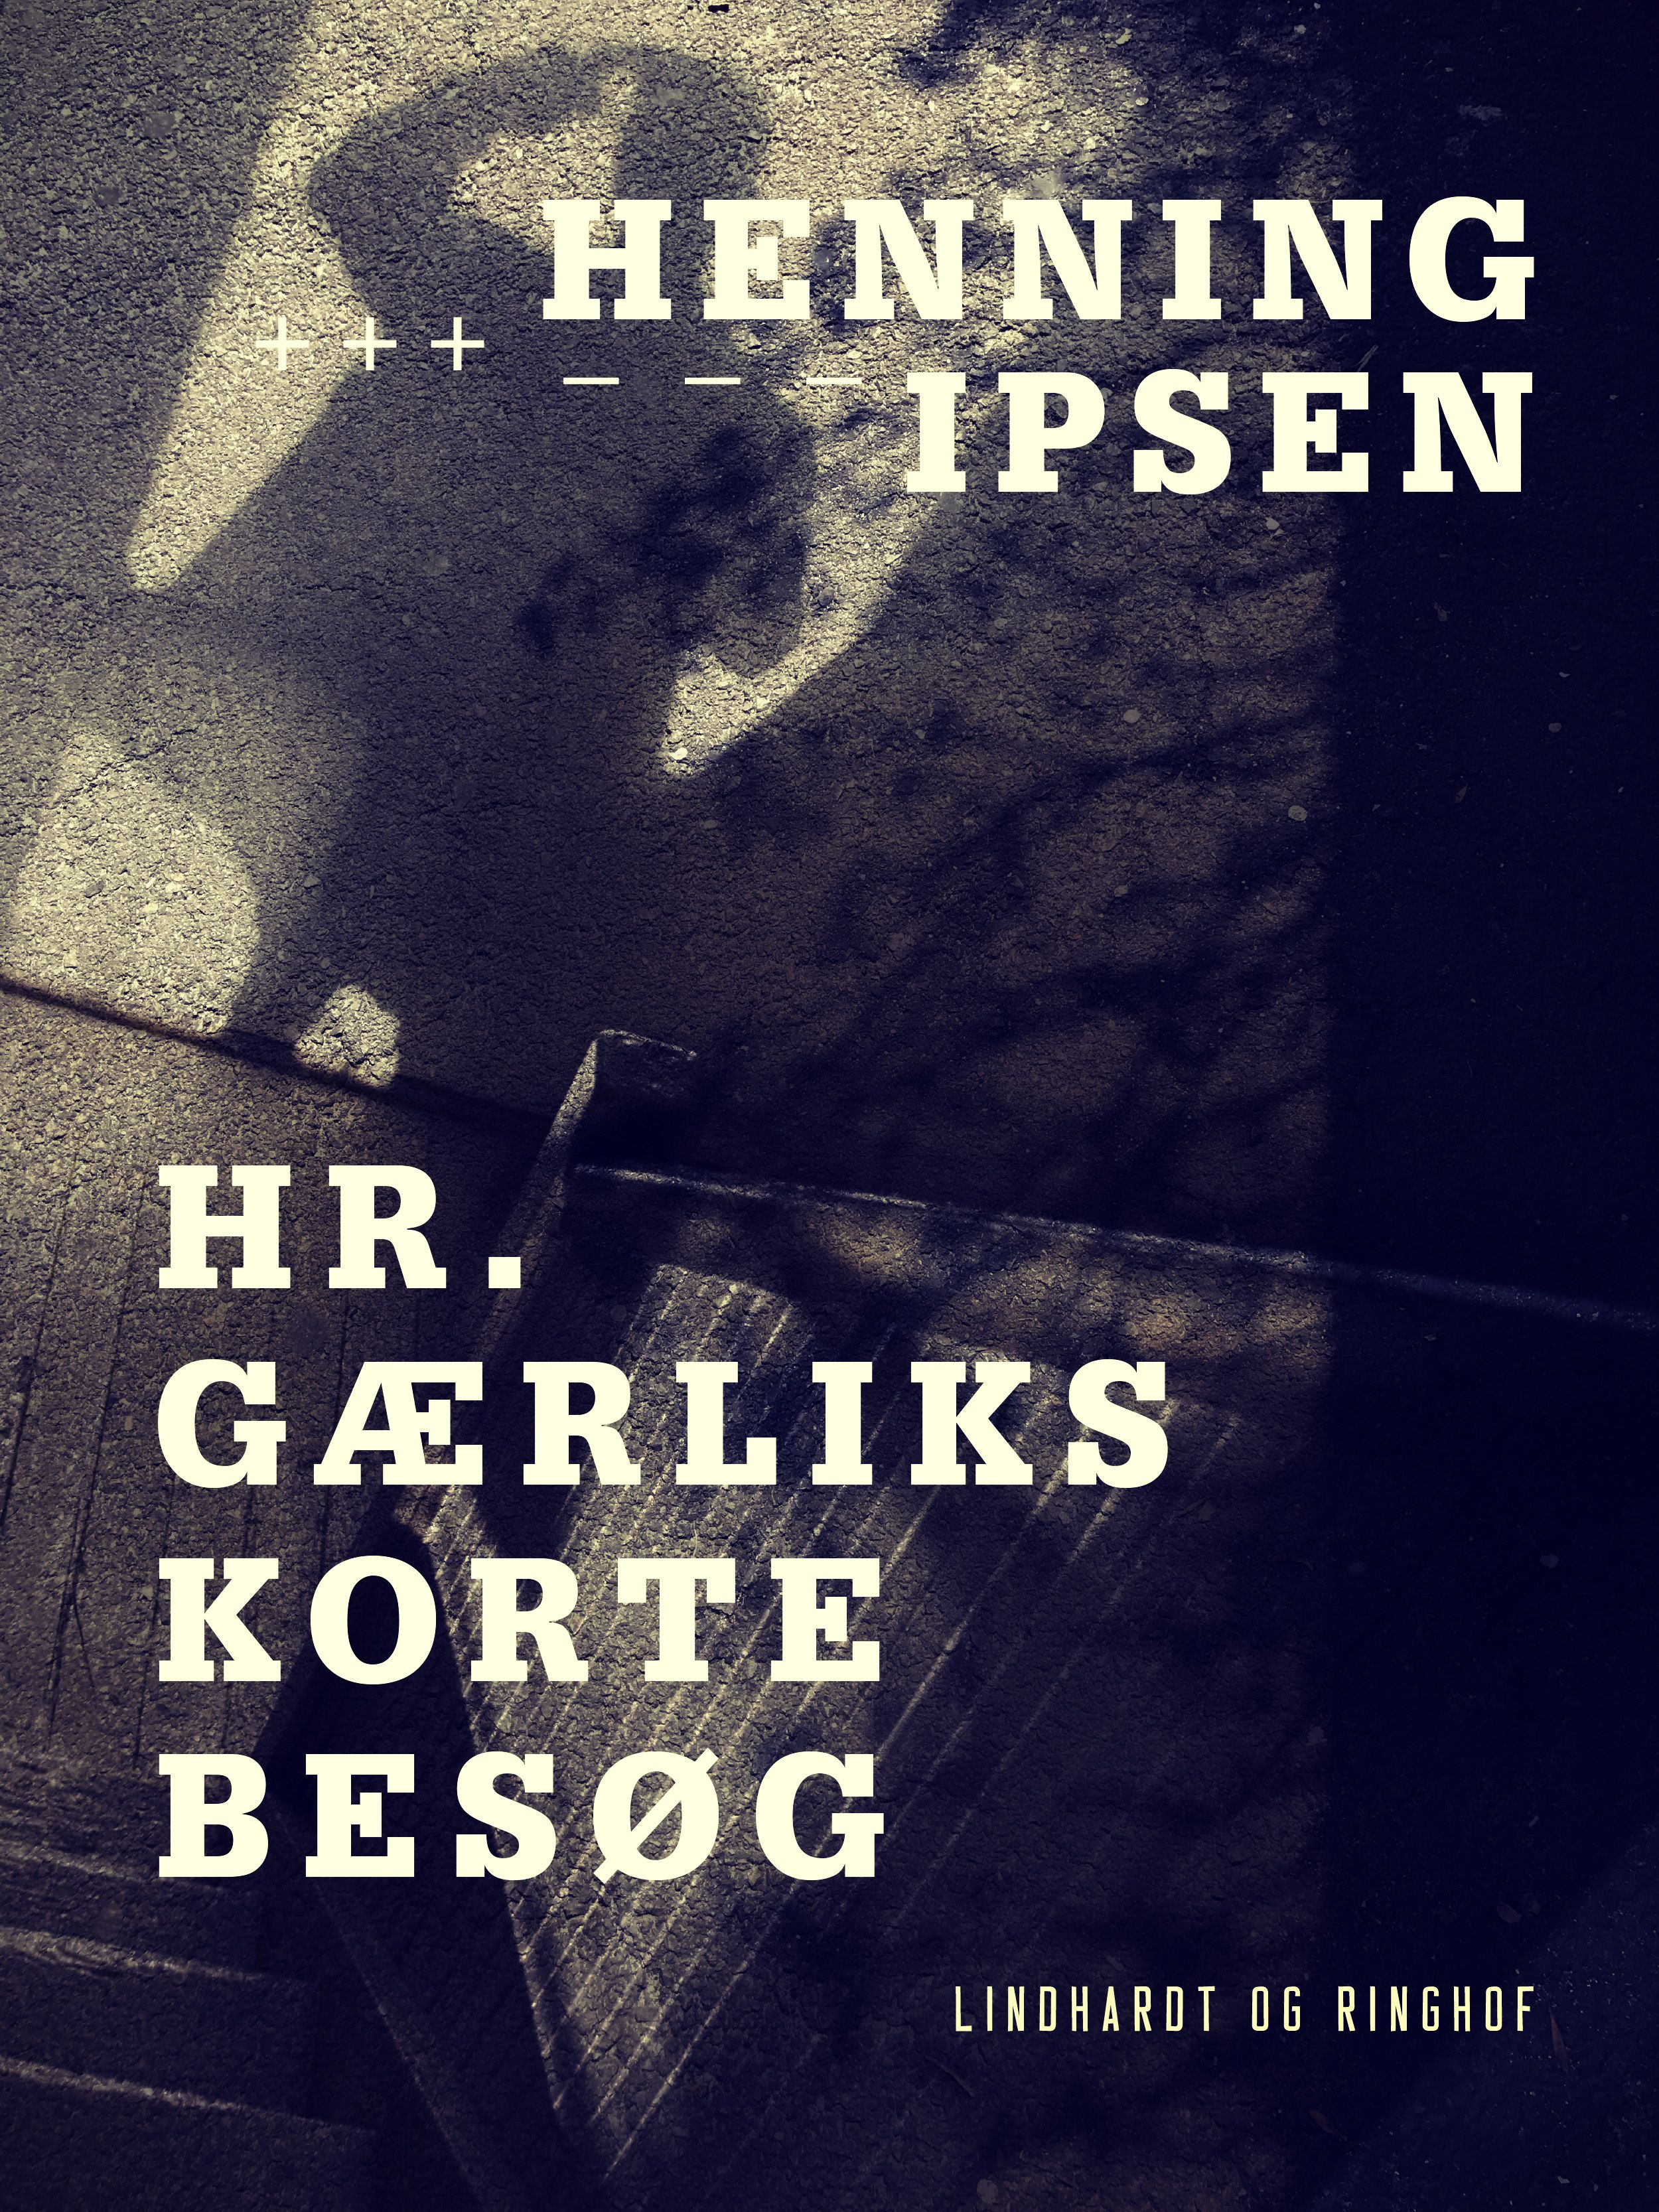 Hr. Gærliks korte besøg, e-bok av Henning Ipsen